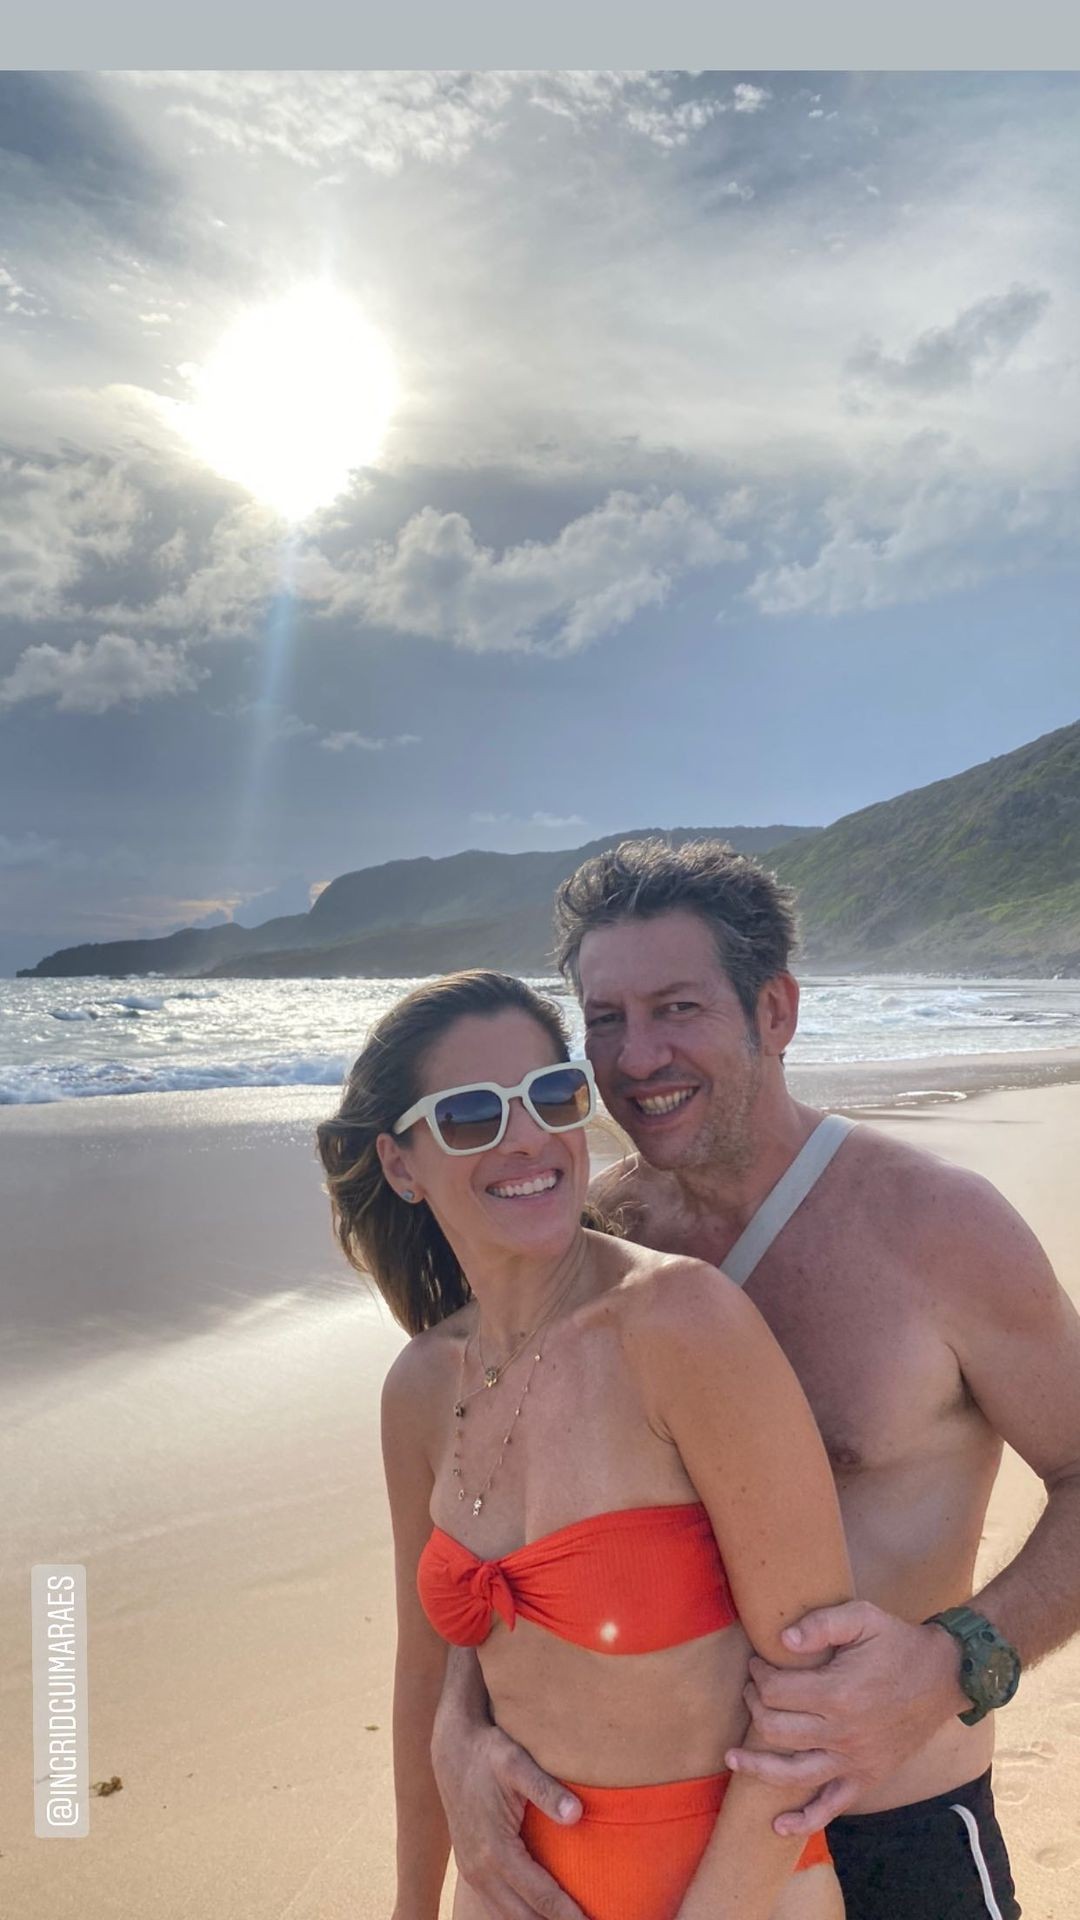 Ingrid Guimarães posa com o marido durante viagem por Noronha (Foto: Reprodução/Instagram)